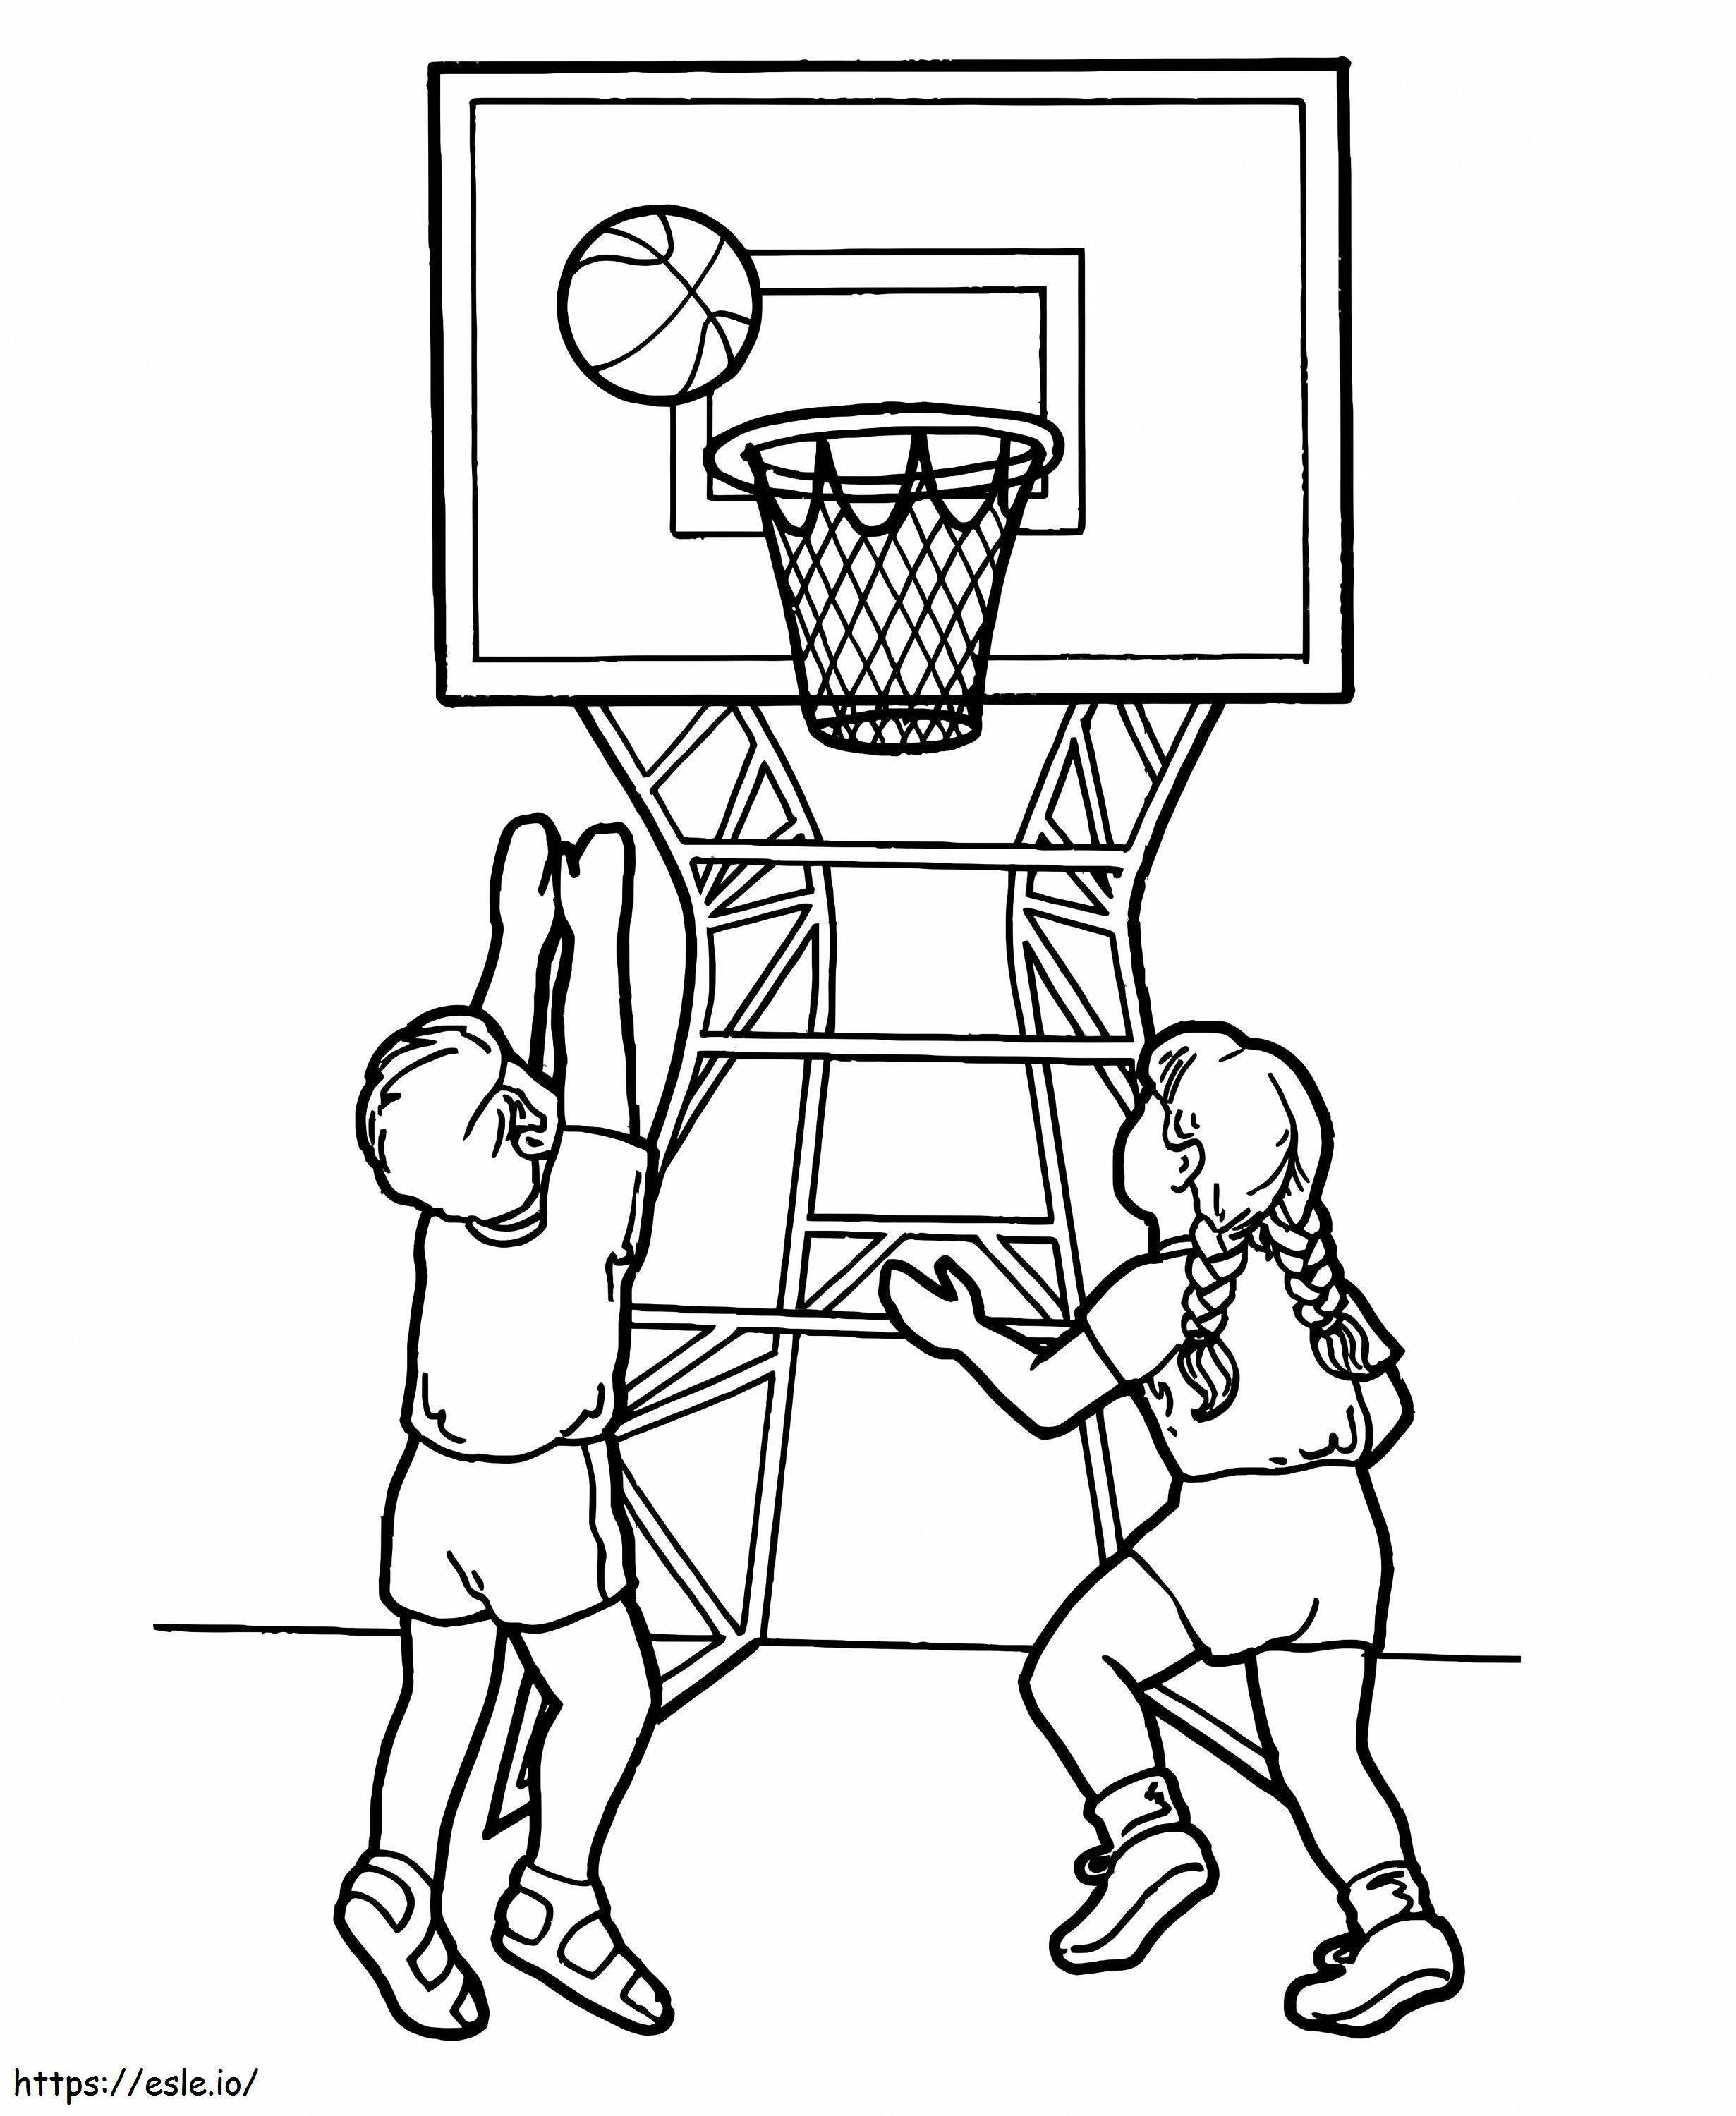 Dos niños jugando baloncesto para colorear